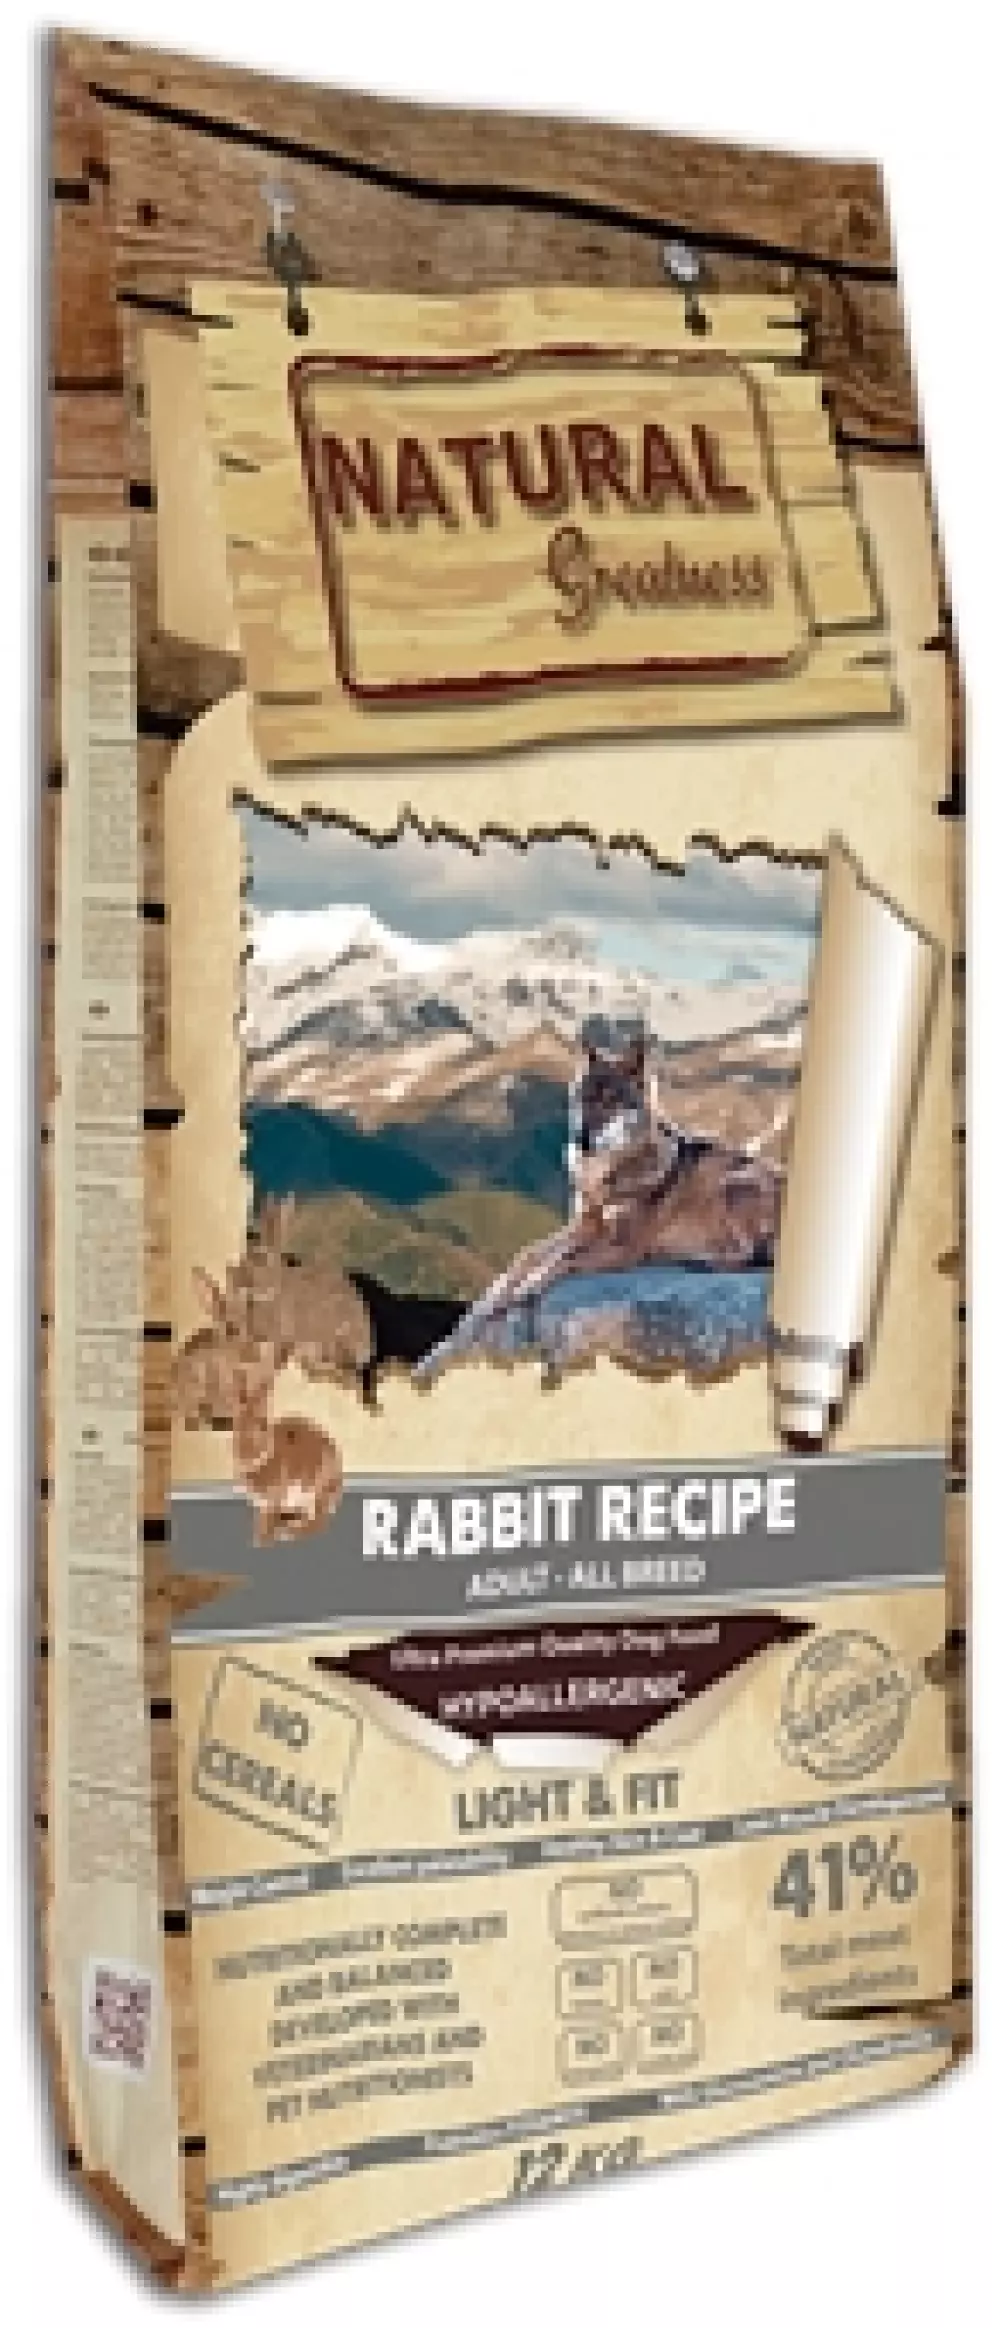 Natural Greatness Rabbit Recipe - Light & Fit 6kg, 8425402399934, Hundemat, Natural Greatness, Arctic Pets AS, Rabbit Recipe – Light & Fit, Tørrfor, Voksen